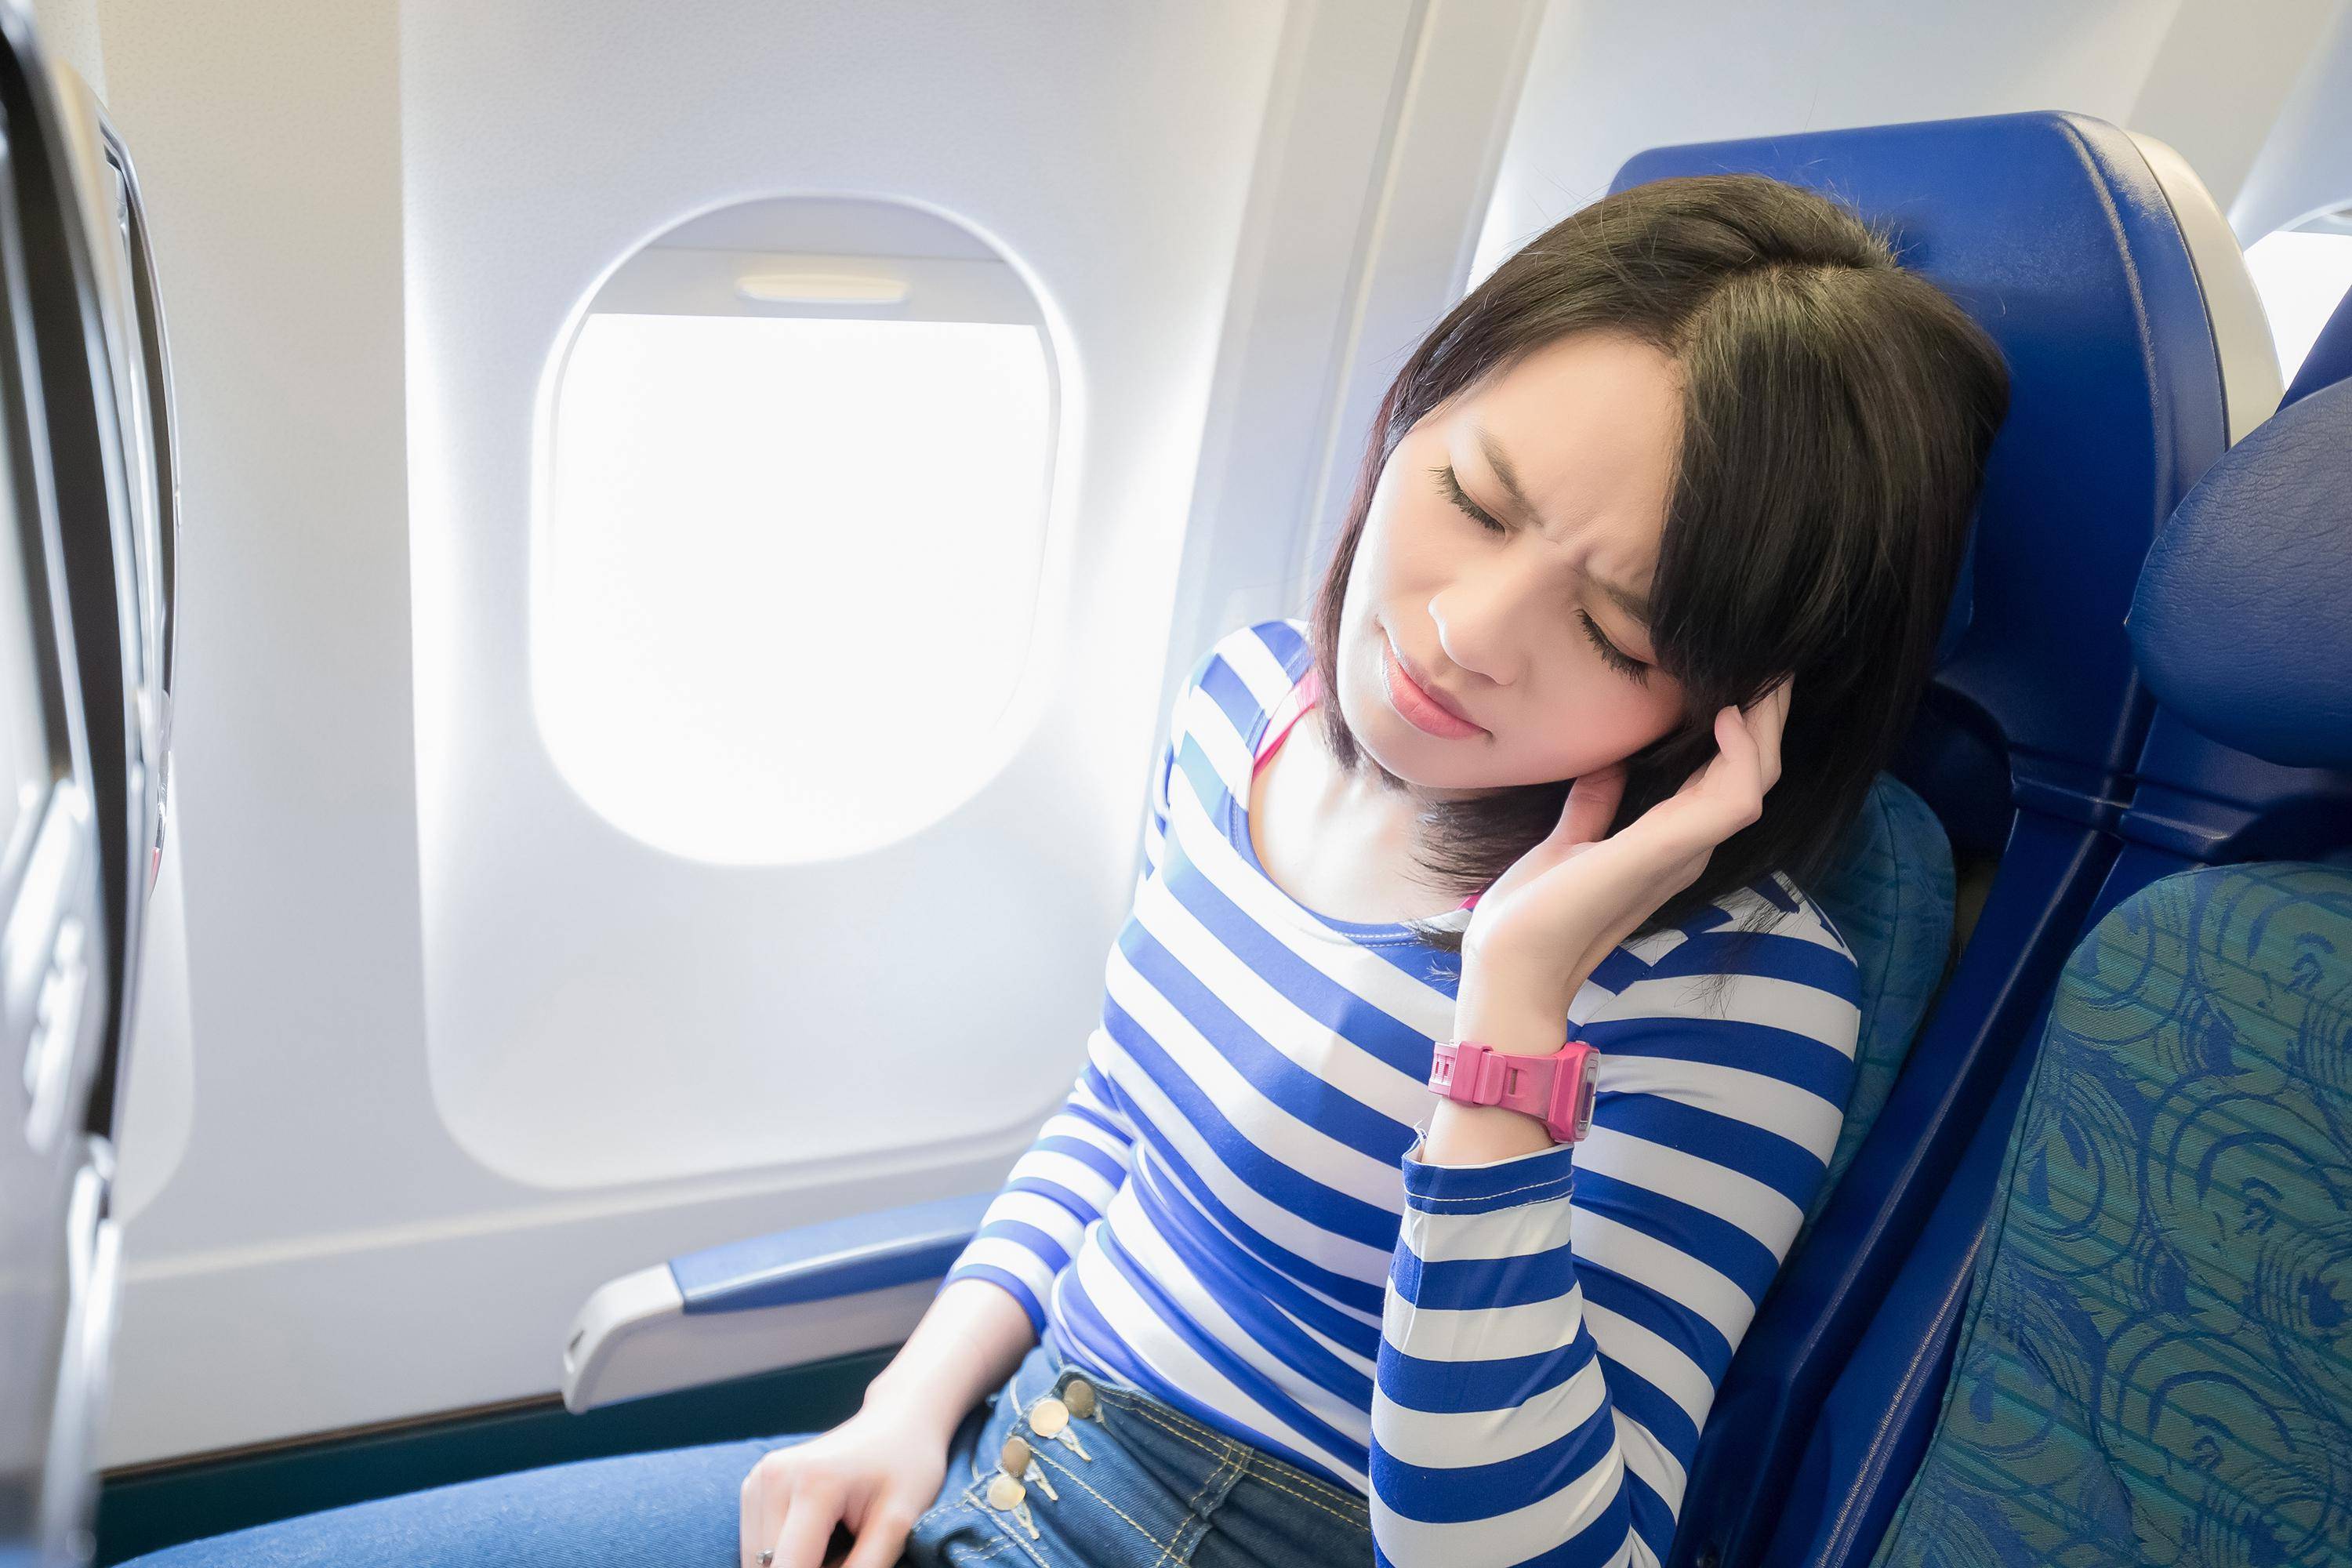 При посадке самолета сильно болят уши: эффективные меры | авиакомпании и авиалинии россии и мира